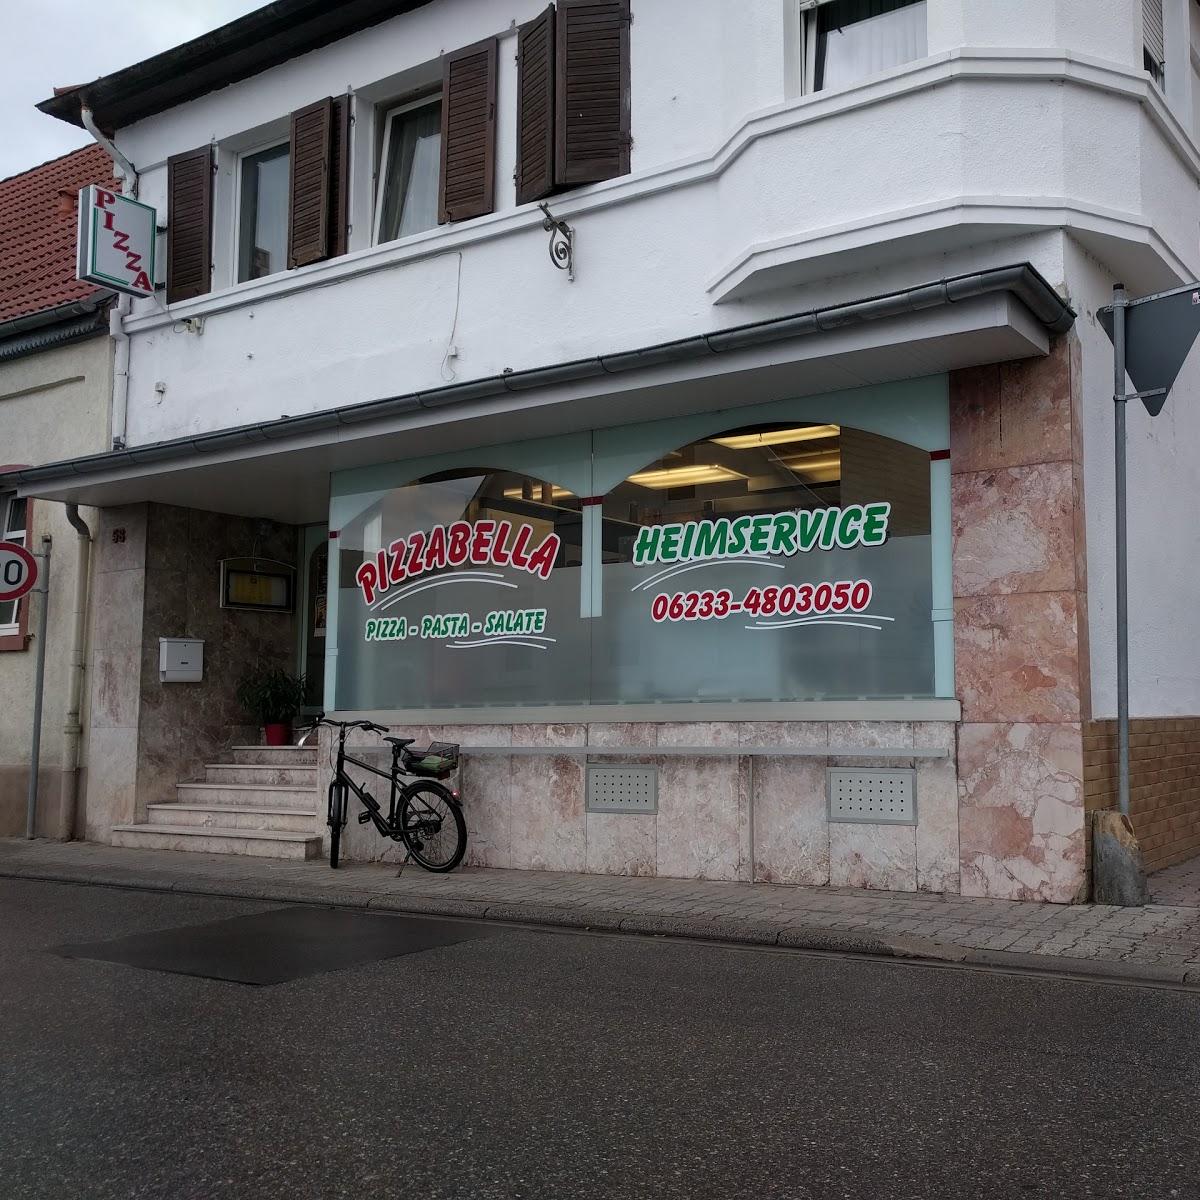 Restaurant "Pizza Pronto Eppstein Lieferservice" in Frankenthal